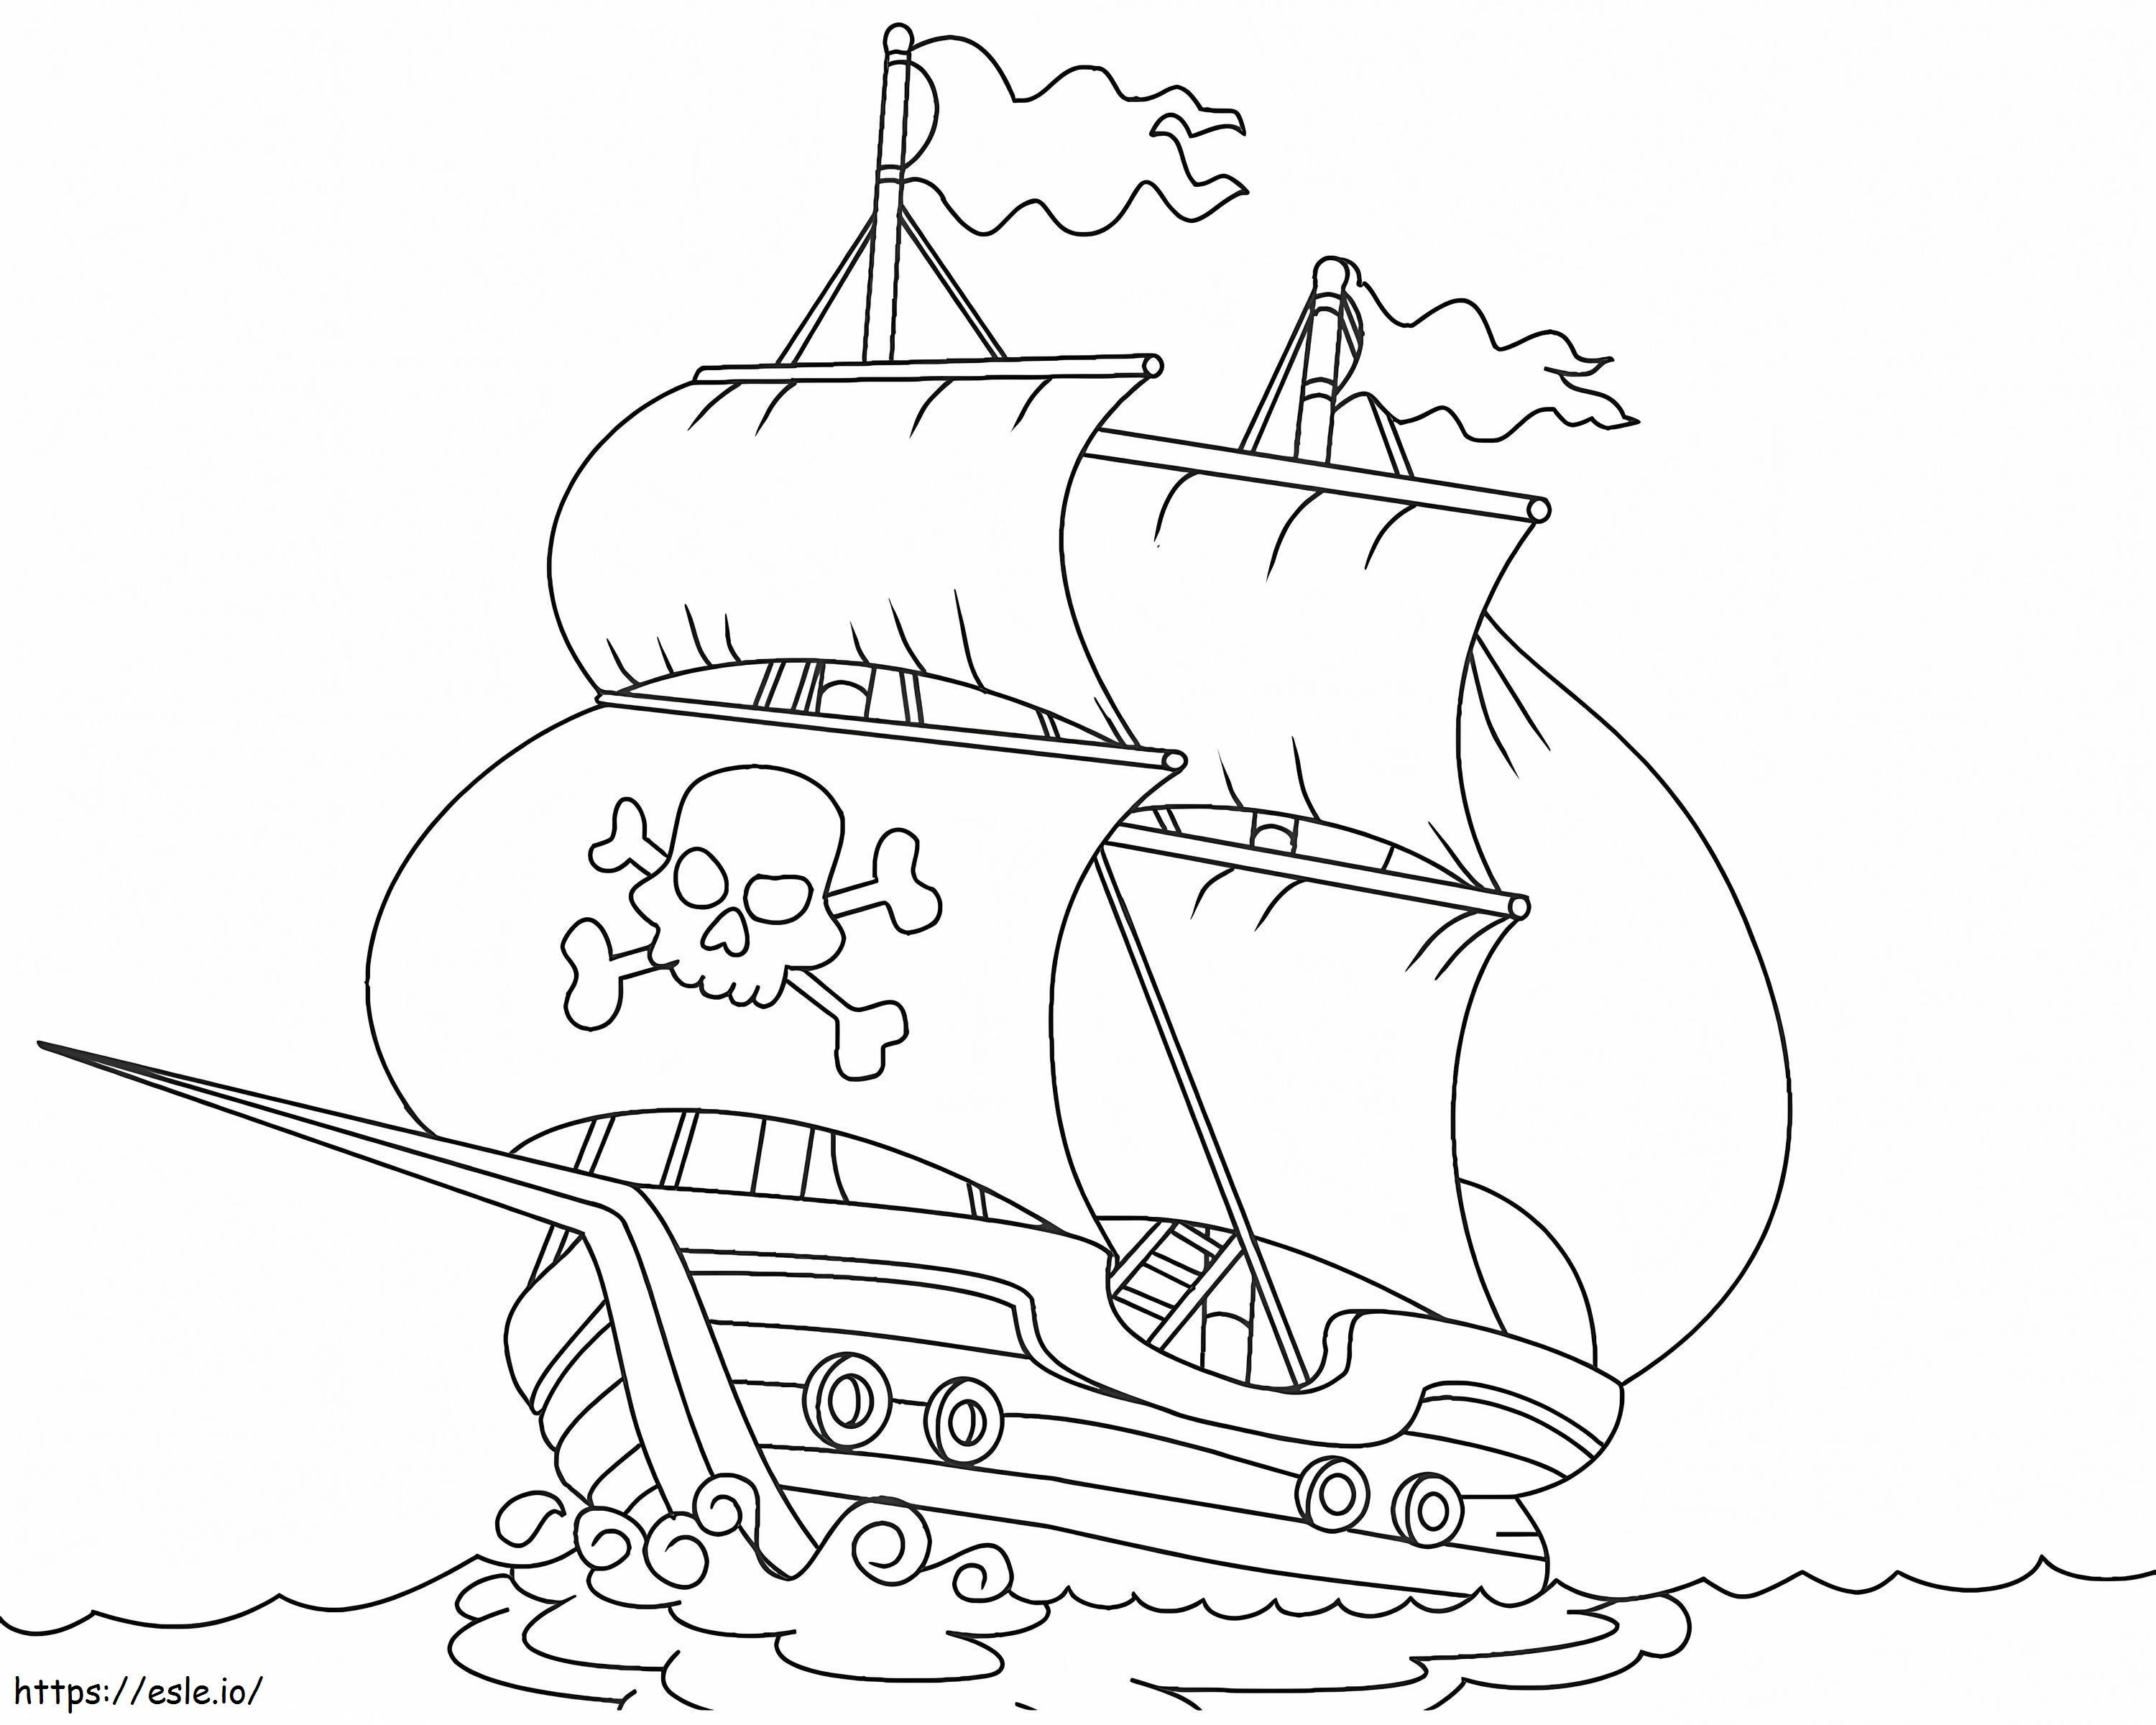 Pagina de colorat mare navă pirat de colorat